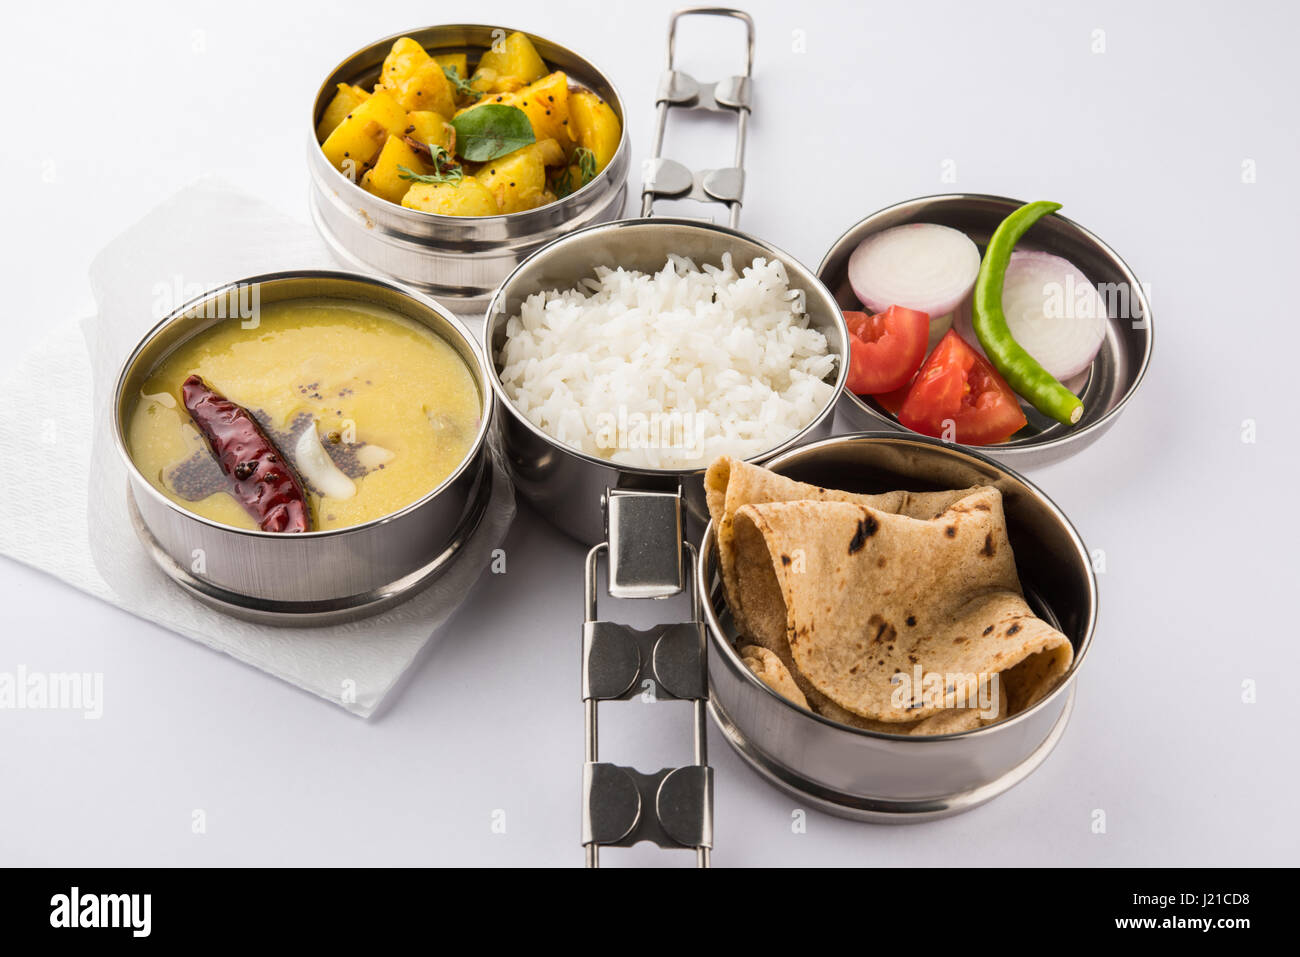 Acier inoxydable typique indien lunch box ou du nord de l'inde avec tiffin ou menu alimentaire maharashtrian comme chapati//roti, dal tadka, riz blanc et aloo / p Banque D'Images